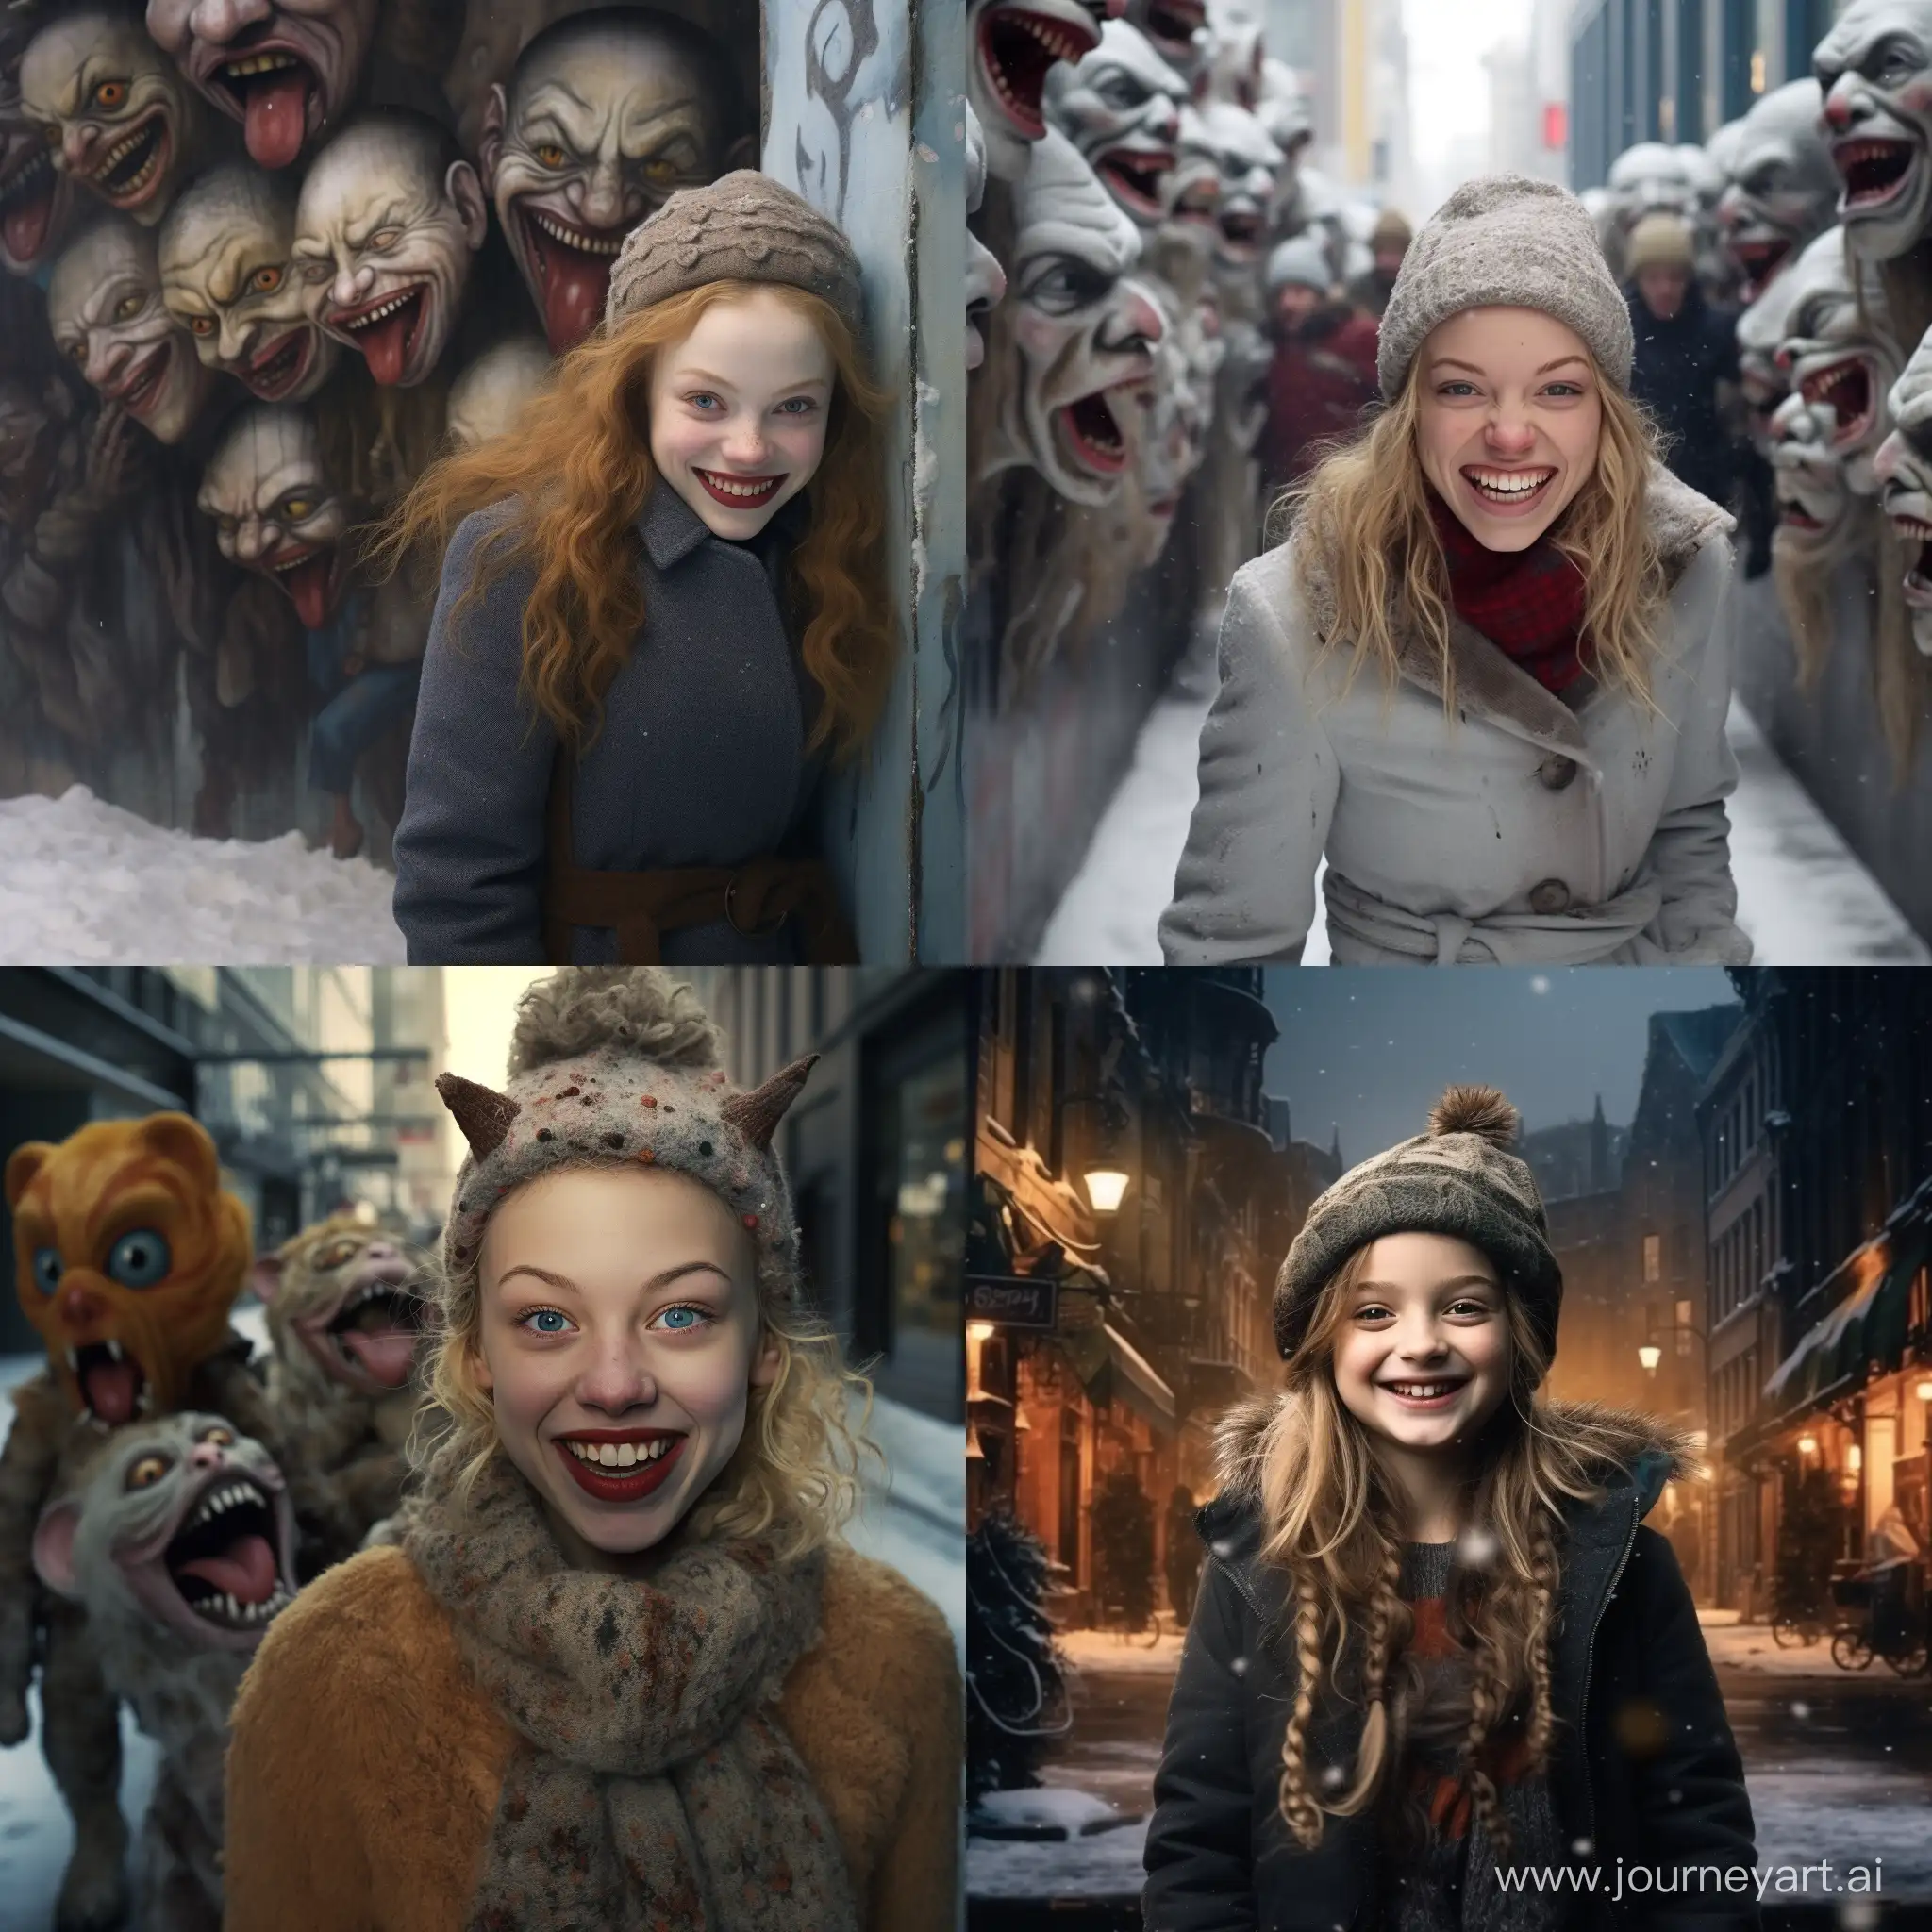 Joyful-Winter-Stroll-Amidst-Grotesque-Dwarfs-Hyperrealistic-Cityscape-Photography